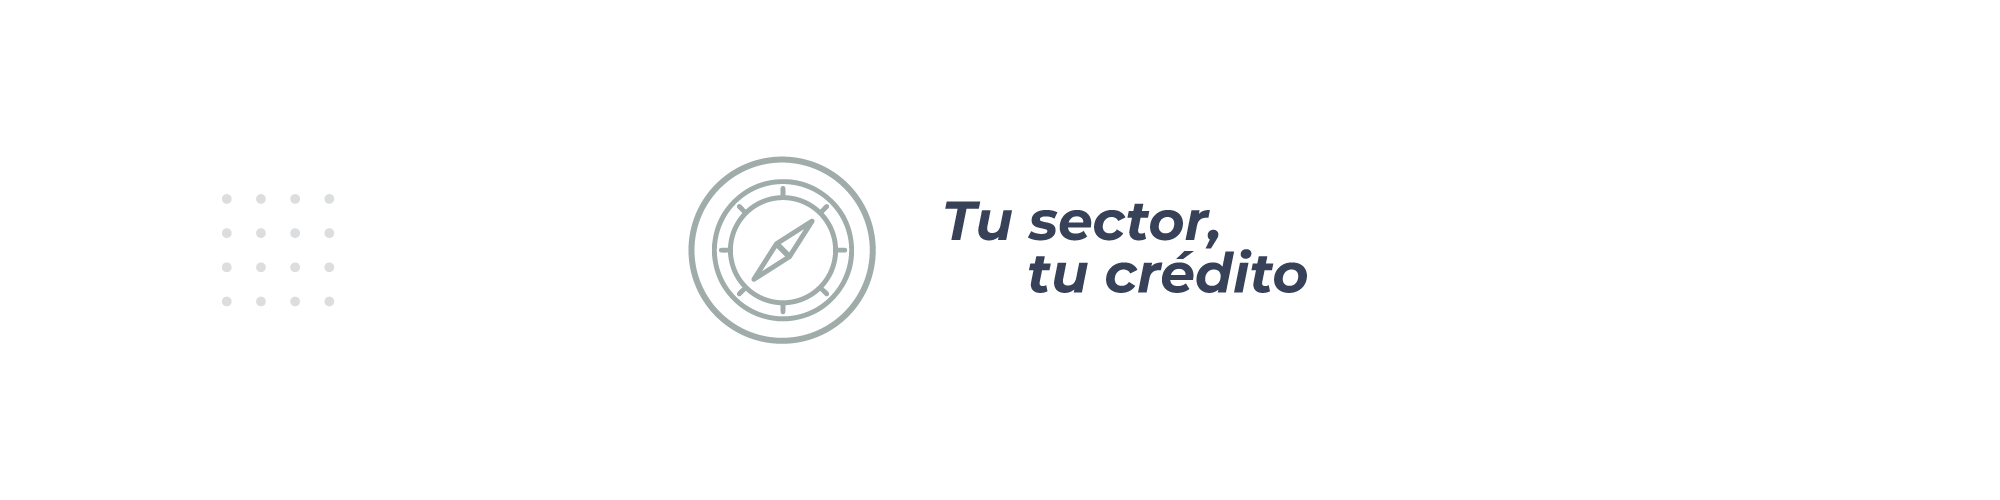 impulsar-mis-proyectos-credito-pyme-credito-simple-tu-sector